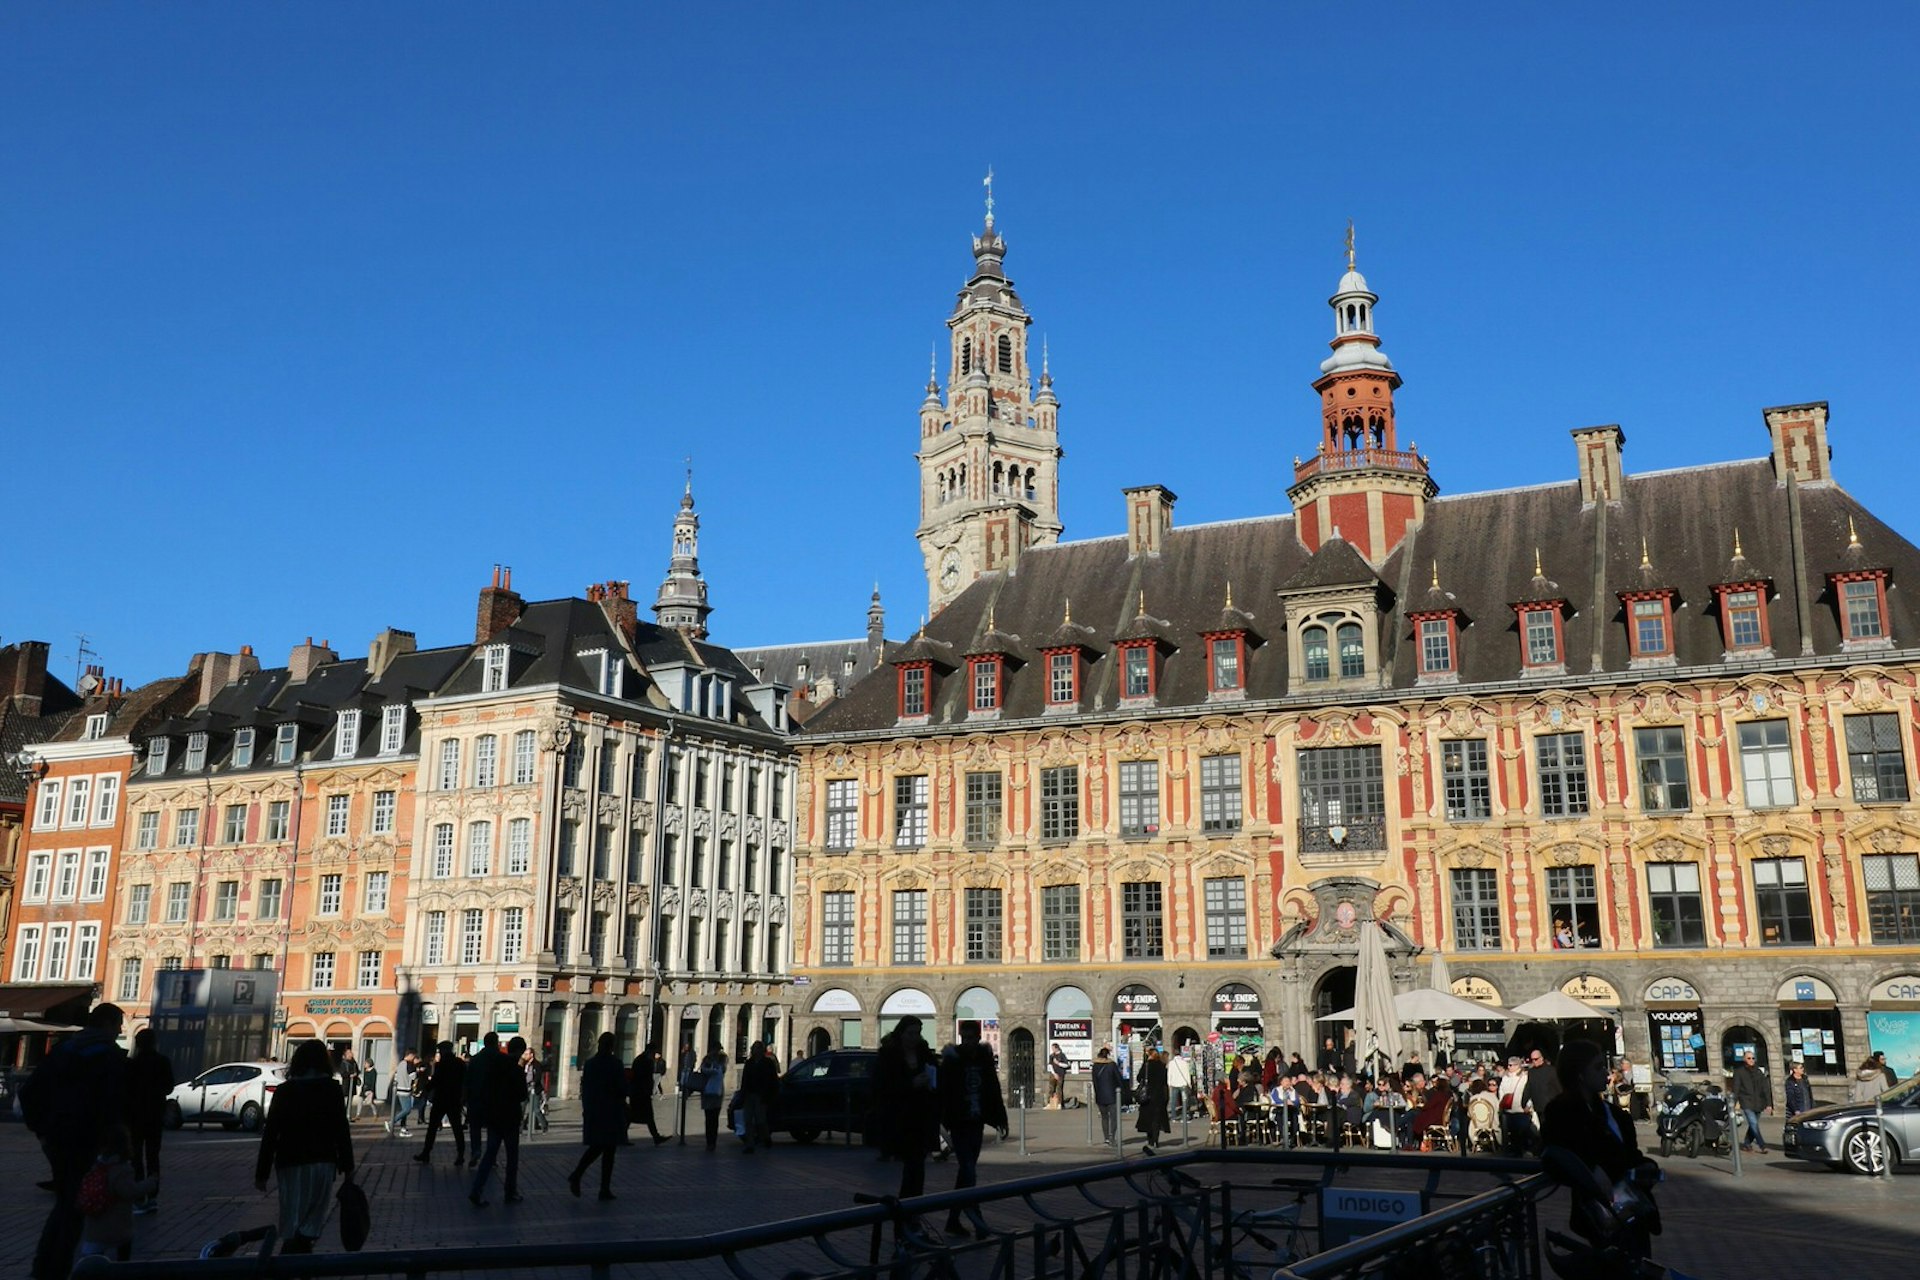 Flemish architecture on display in Lille's place du Général de Gaulle